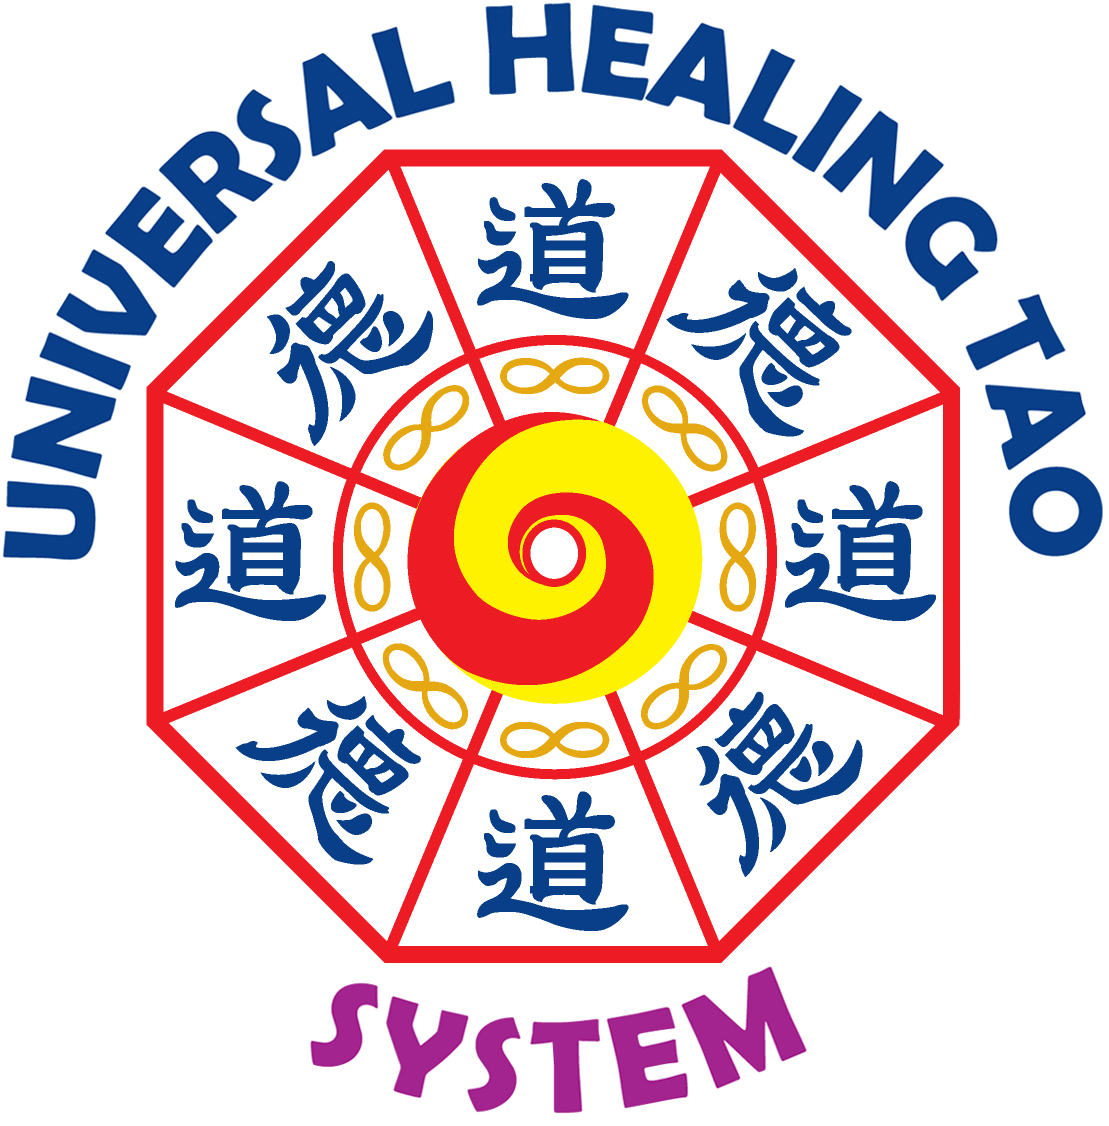 Centros asociados a la Escuela del Maestro Mantak Chia "Universal Healing Tao"